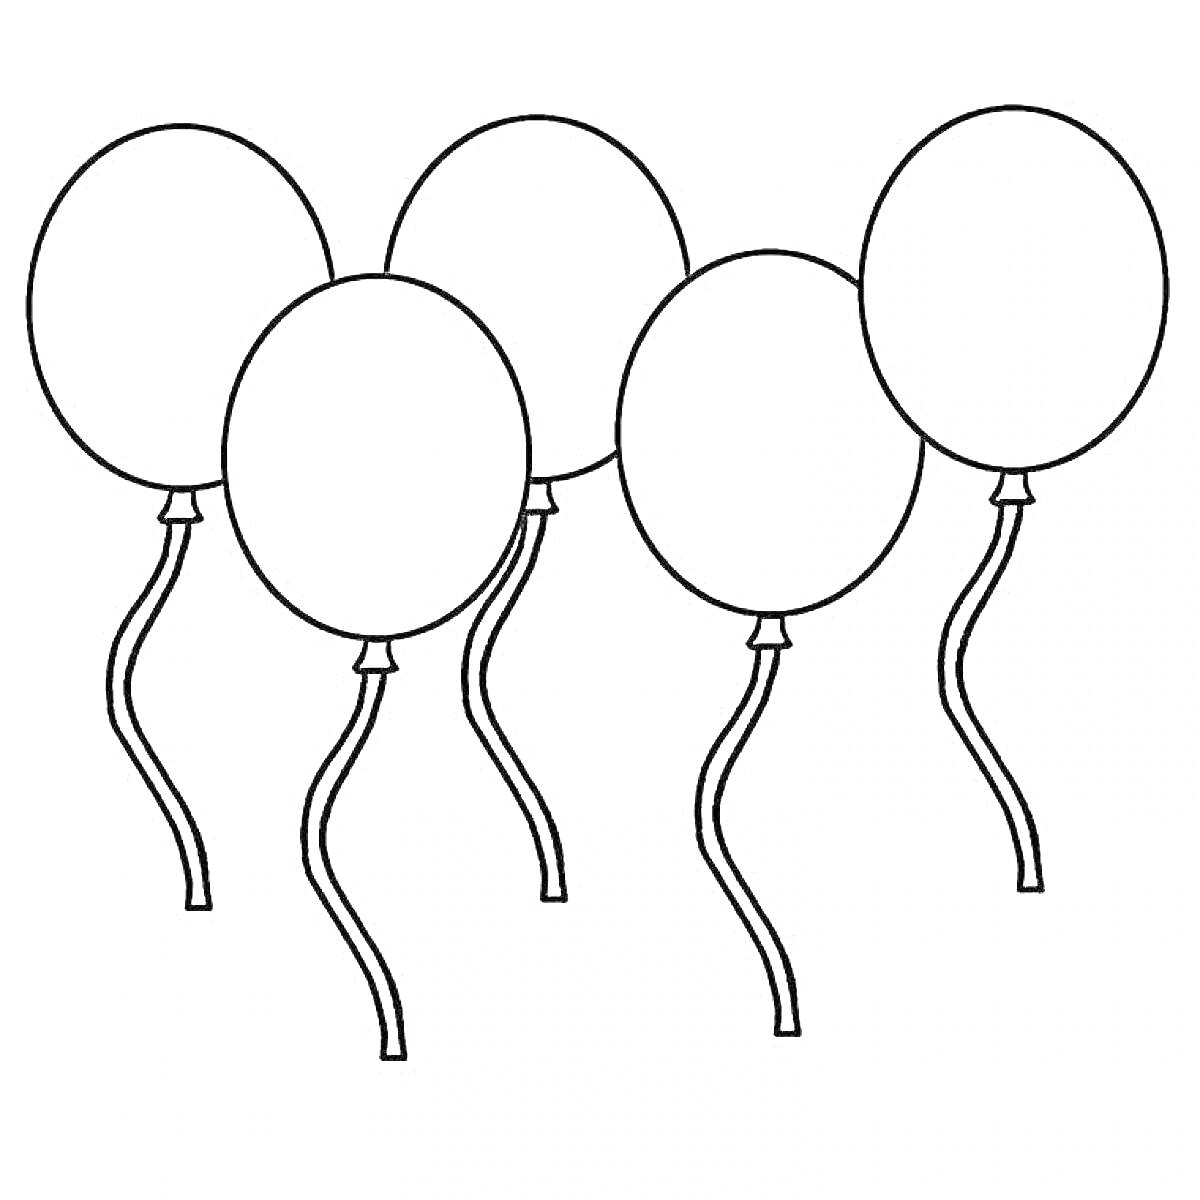 пять воздушных шариков с нитками